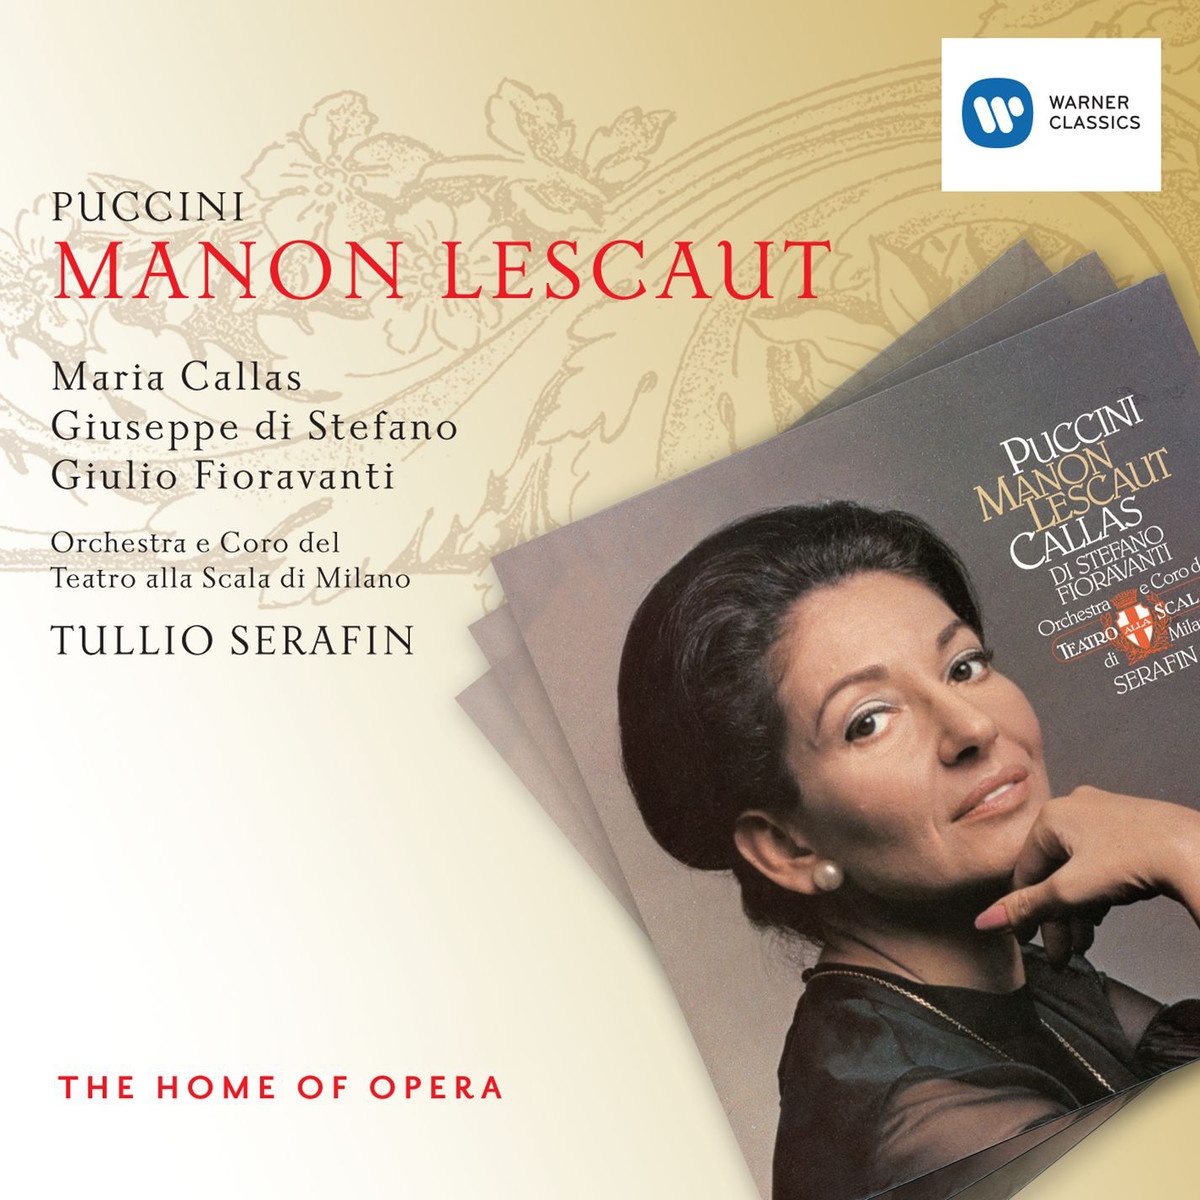 Manon Lescaut, ATTO TERZO ACT 3 DRITTER AKT TROISIÈ ME ACTE: Manon! ... Des Grieux! Des Grieux Manon Un Lampionaio